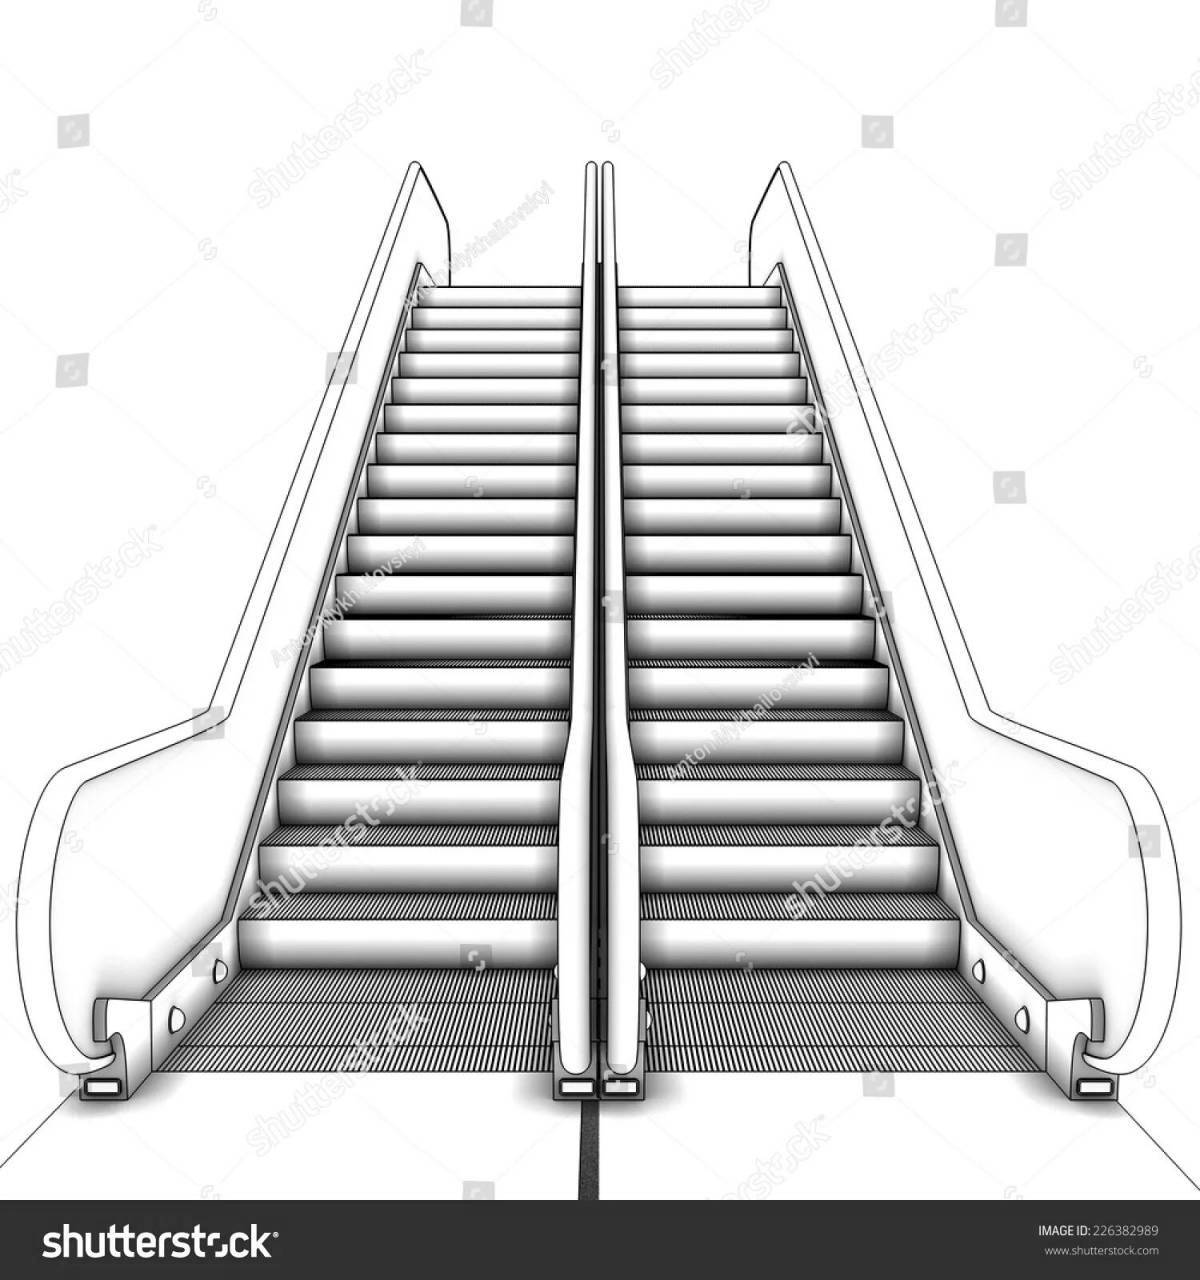 Coloring page dazzling escalator